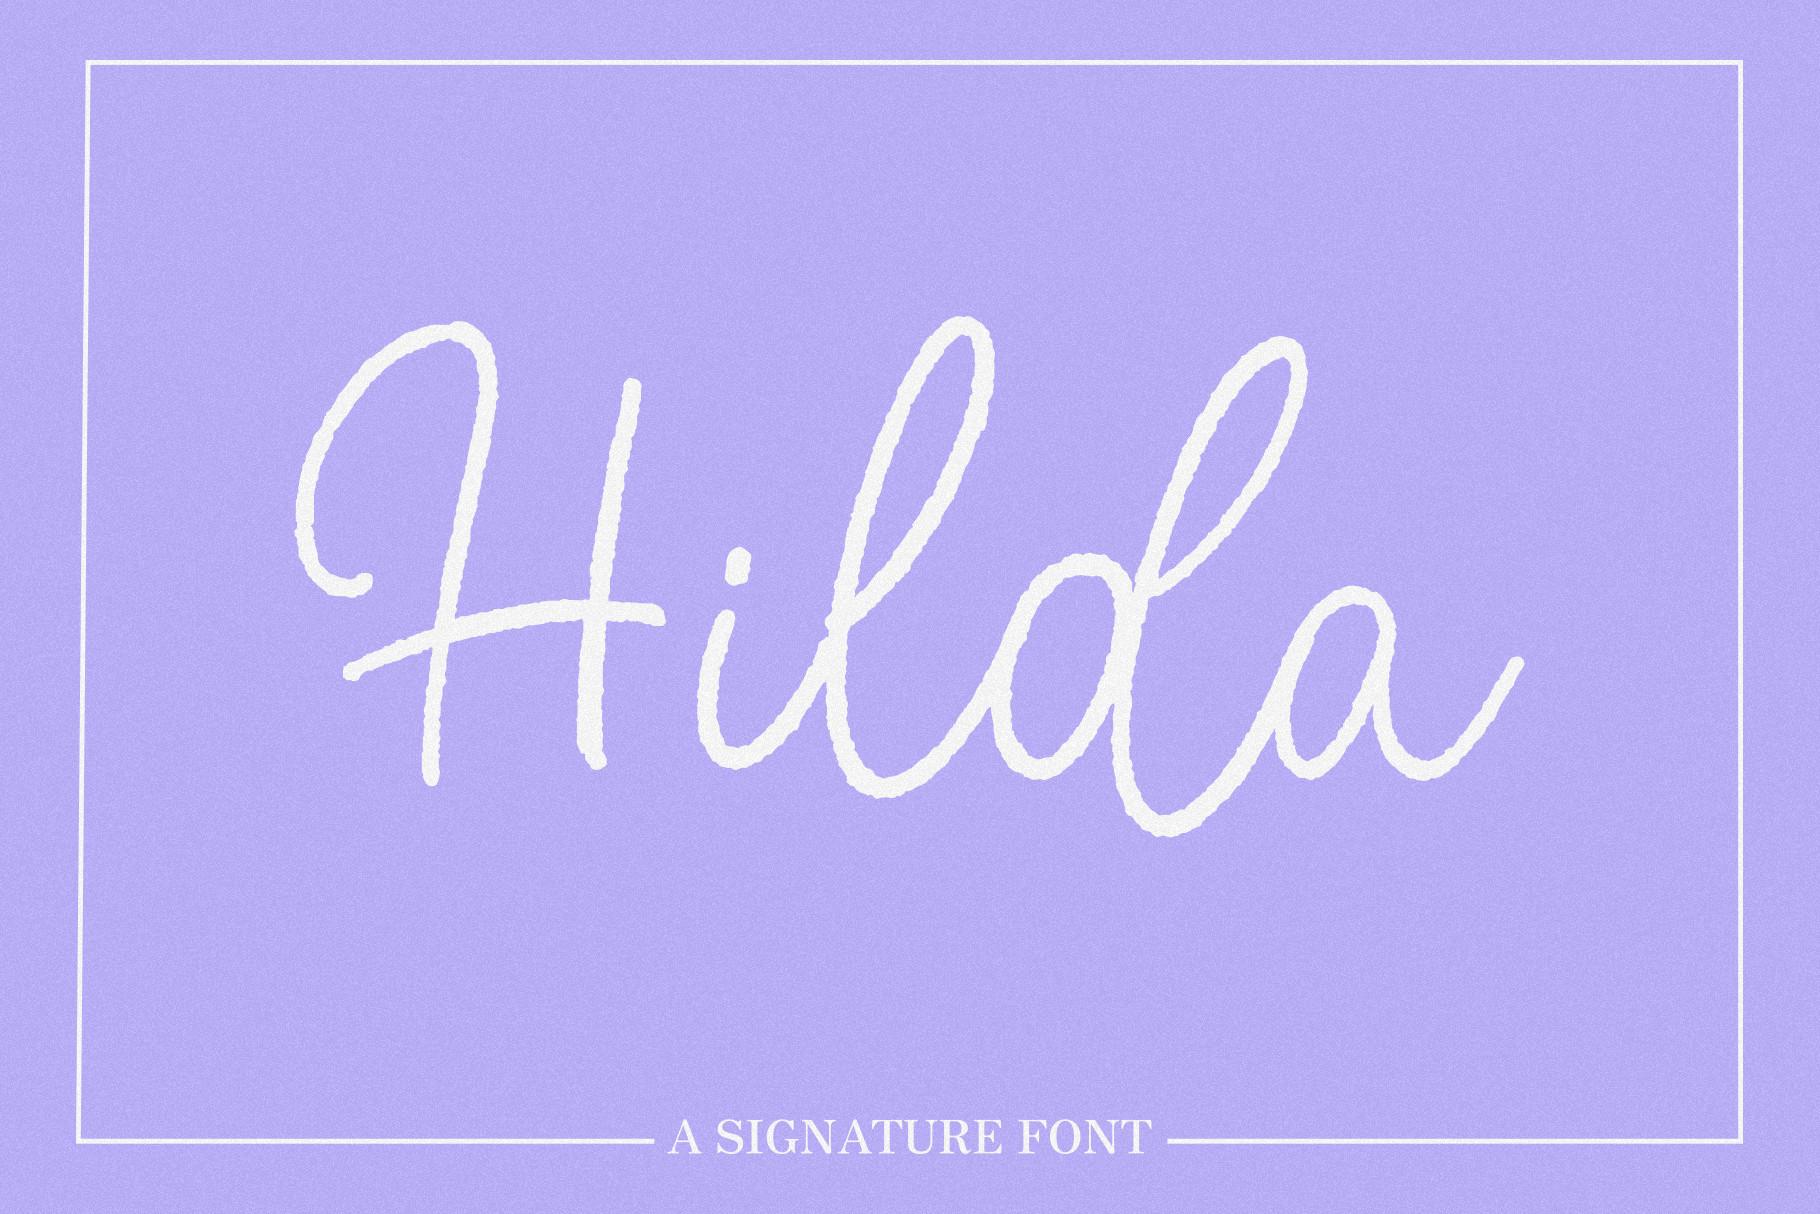 Hilda Font